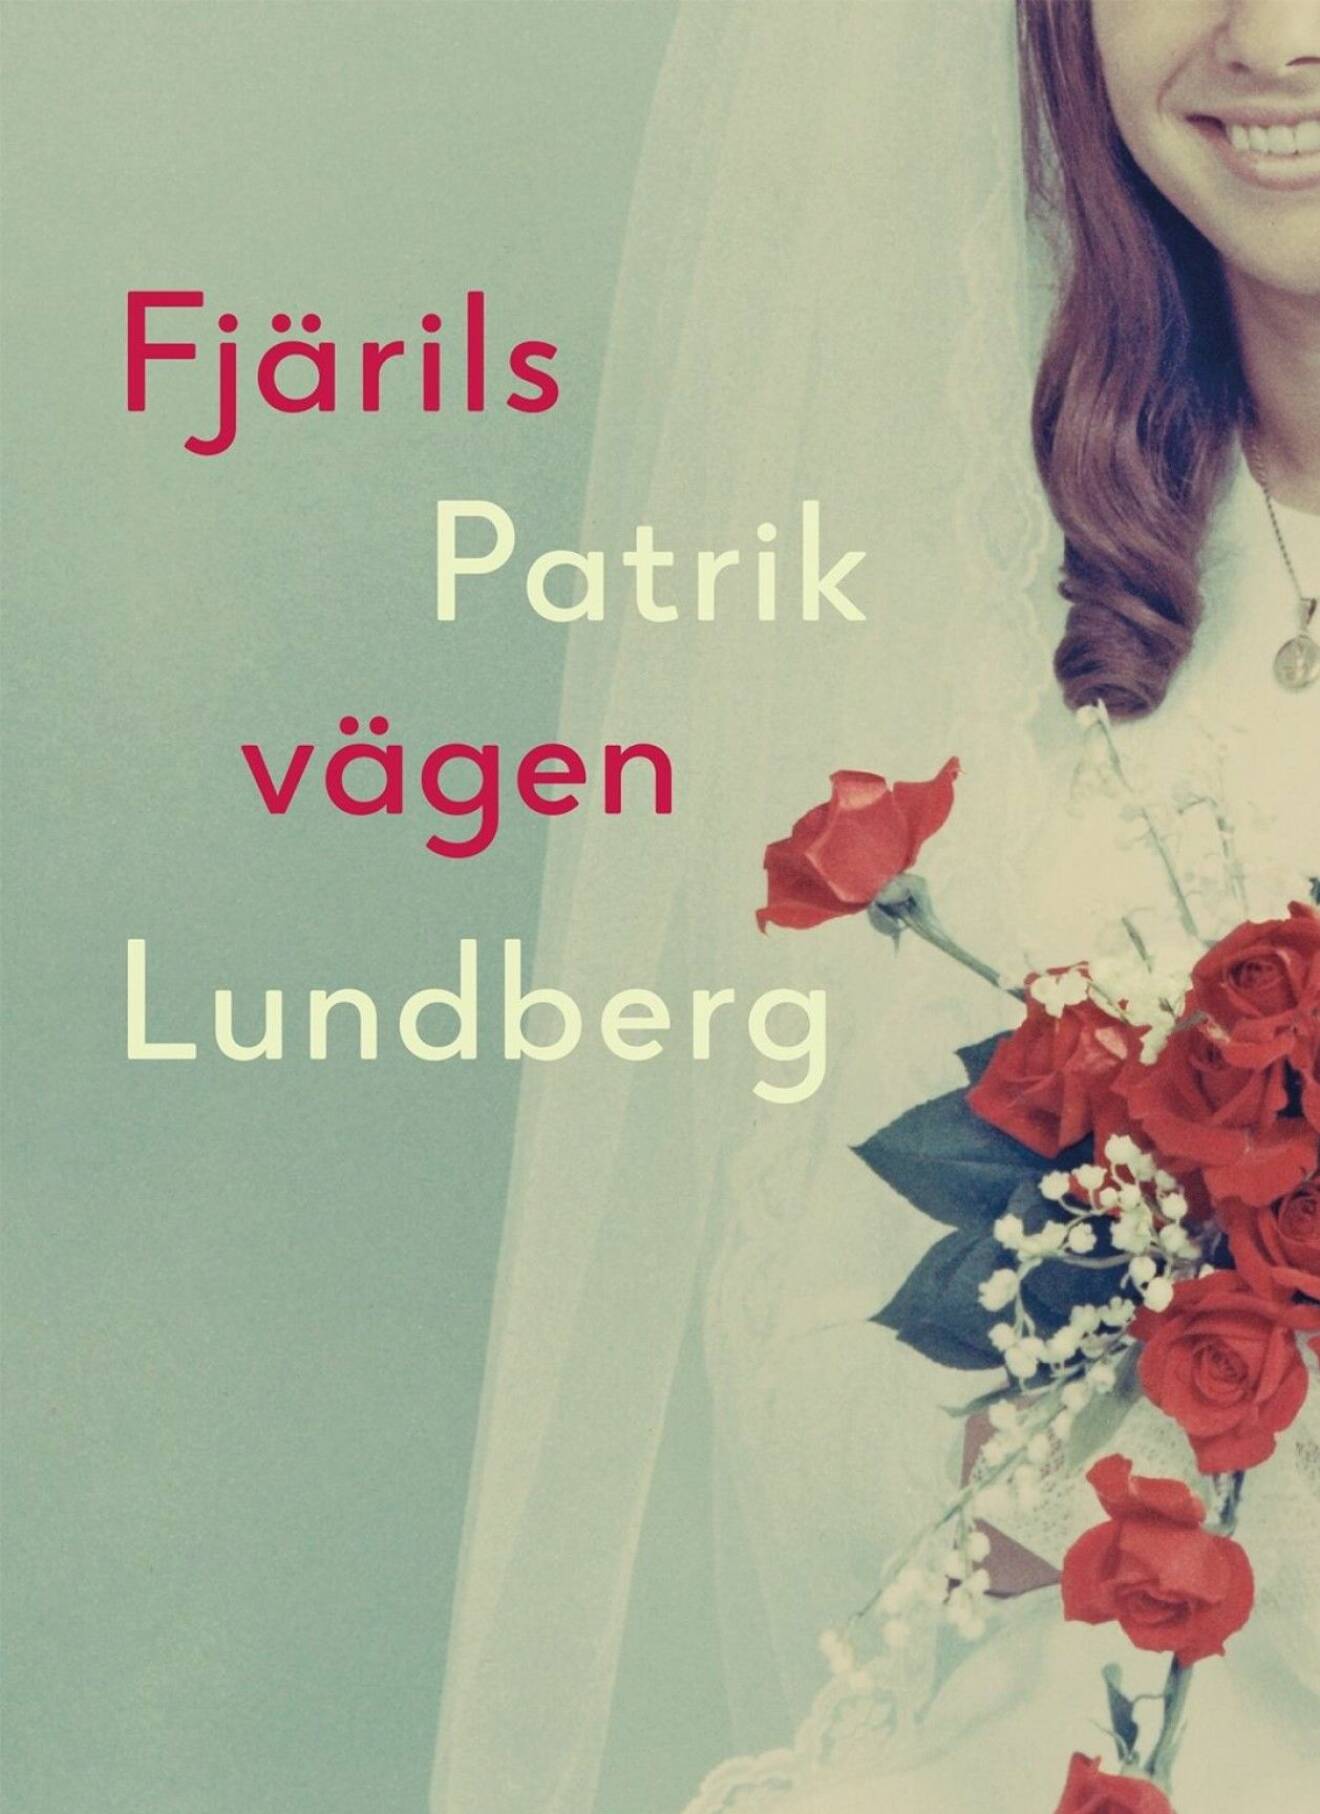 Boken Fjärilsvägen av författaren och journalisten Patrik Lundberg